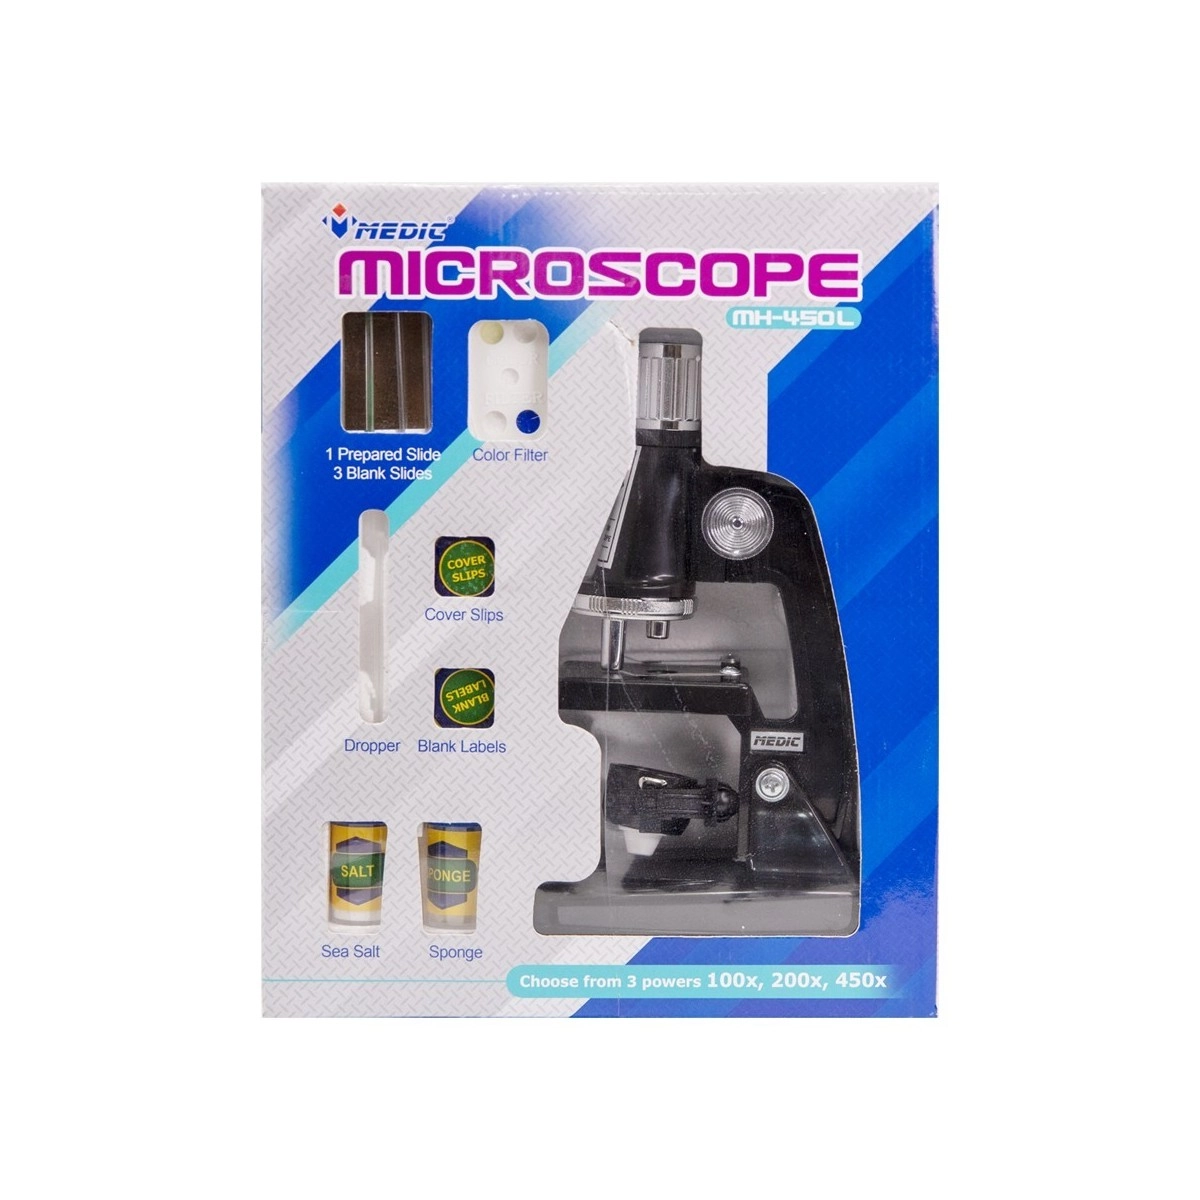 میکروسکوپ دانش آموزی 450 medic microscope mh-450L